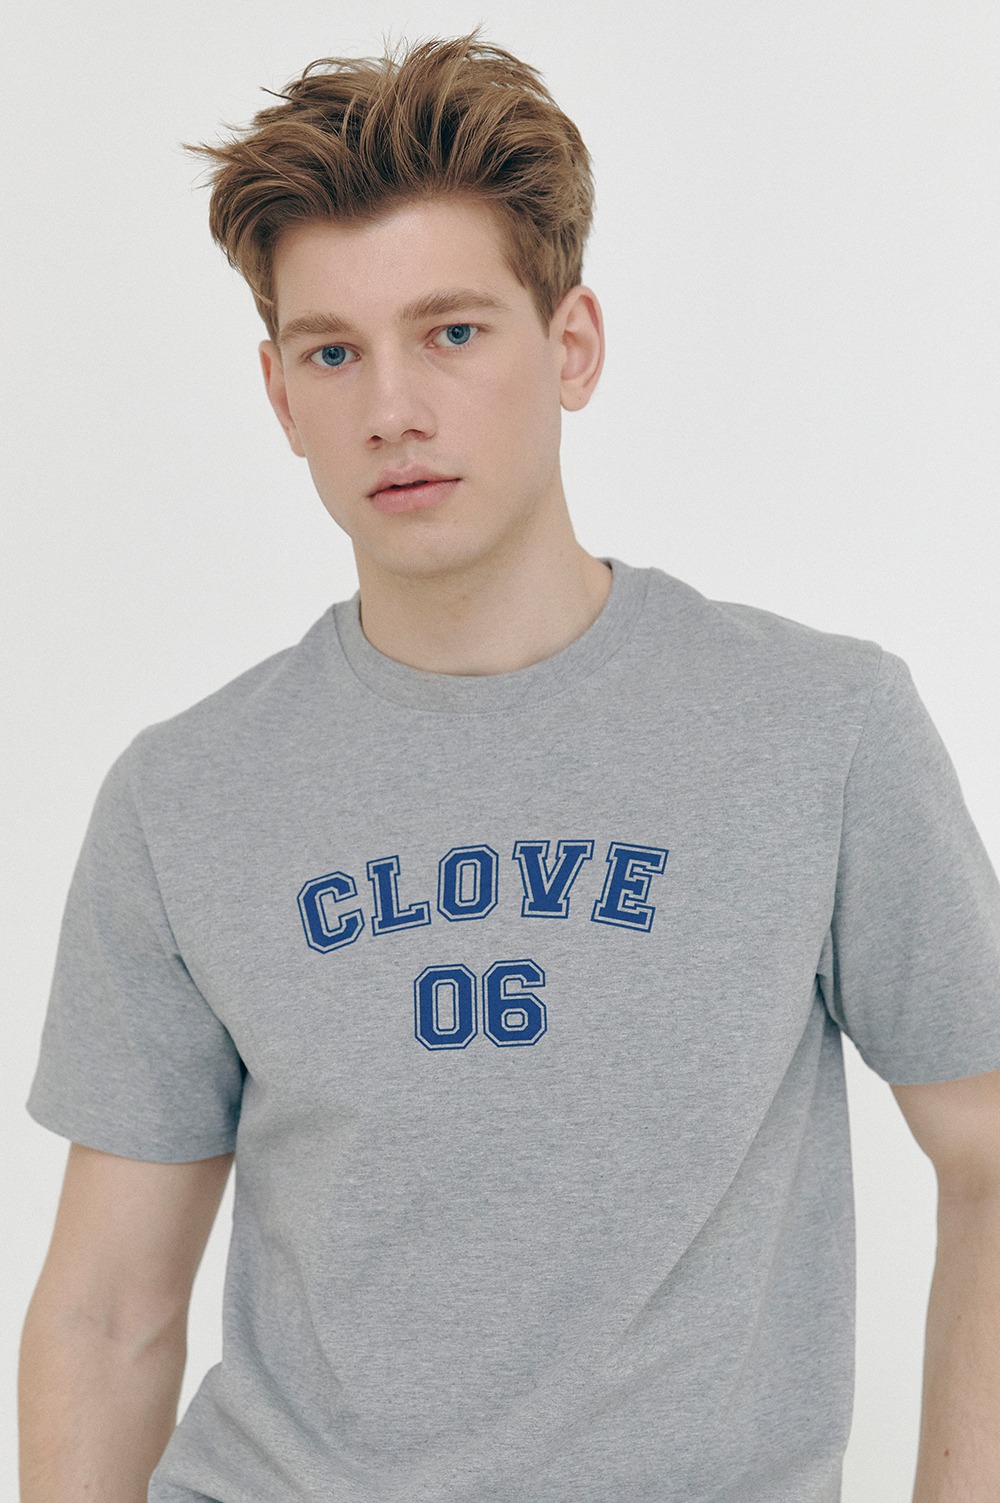 clove - [SS21 clove] Club T-Shirt (Melange Grey)